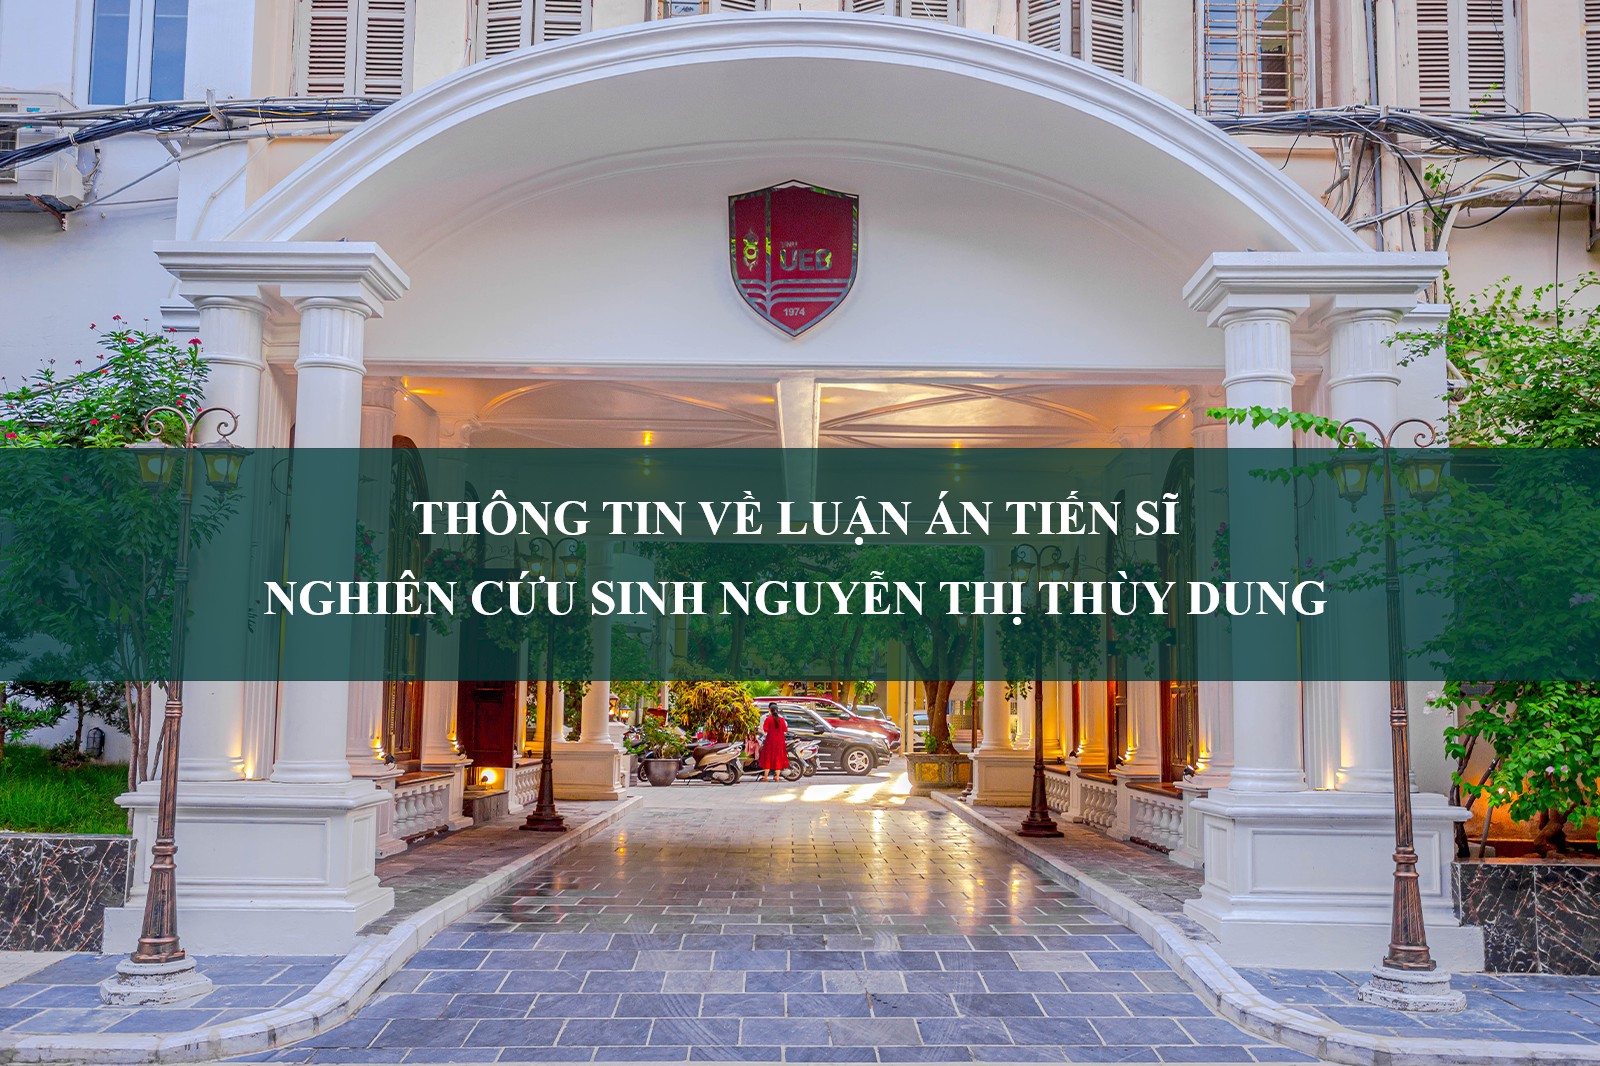 Thông tin về luận án tiến sĩ nghiên cứu sinh Nguyễn Thị Thùy Dung